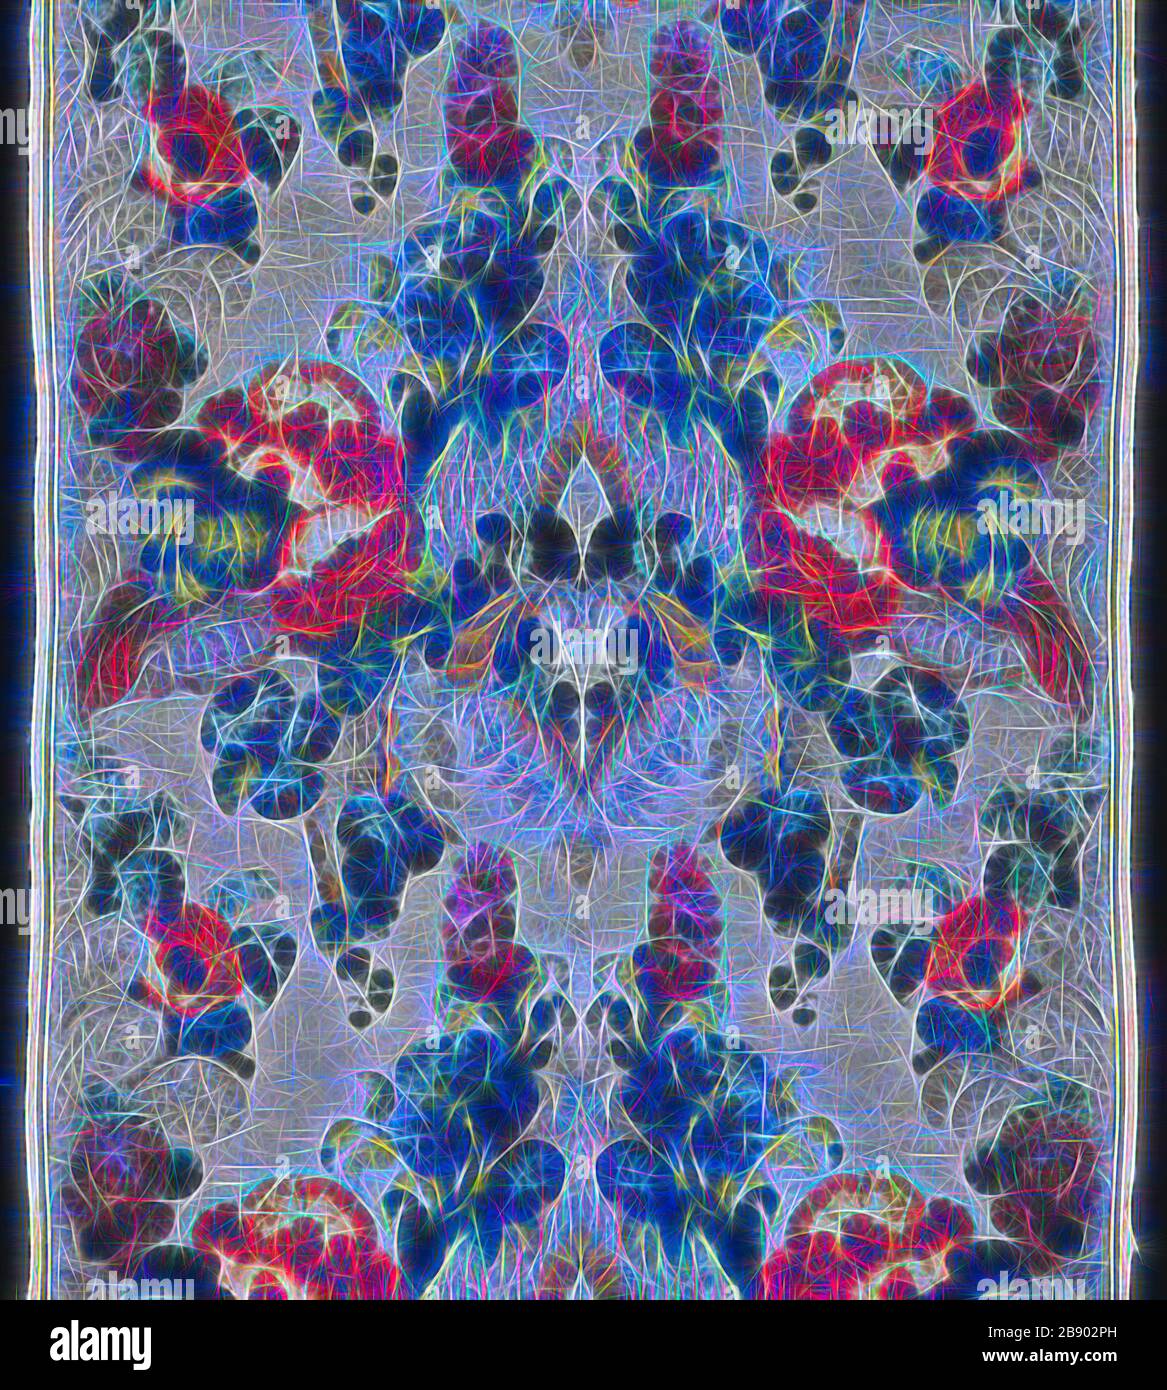 Pannello, 1701/25, Francia, Seta, ciniglia di seta, E la seta dorata-metallo-striscia-incartata, ordito-galleggiante di fronte 3:1 tessitura spezzata di twill con trama-galleggiante di fronte 1:3 'S' intrecci di orditi di legame secondario e trame supplementari di fronte e di broccatura, 107.2 × 55 cm (41 1/4 × 21 5/8 in.), Reimagined da Gibon, disegno di calore allegro di luminosità e raggi di luce radiance. Arte classica reinventata con un tocco moderno. La fotografia ispirata al futurismo, che abbraccia l'energia dinamica della tecnologia moderna, del movimento, della velocità e rivoluziona la cultura. Foto Stock